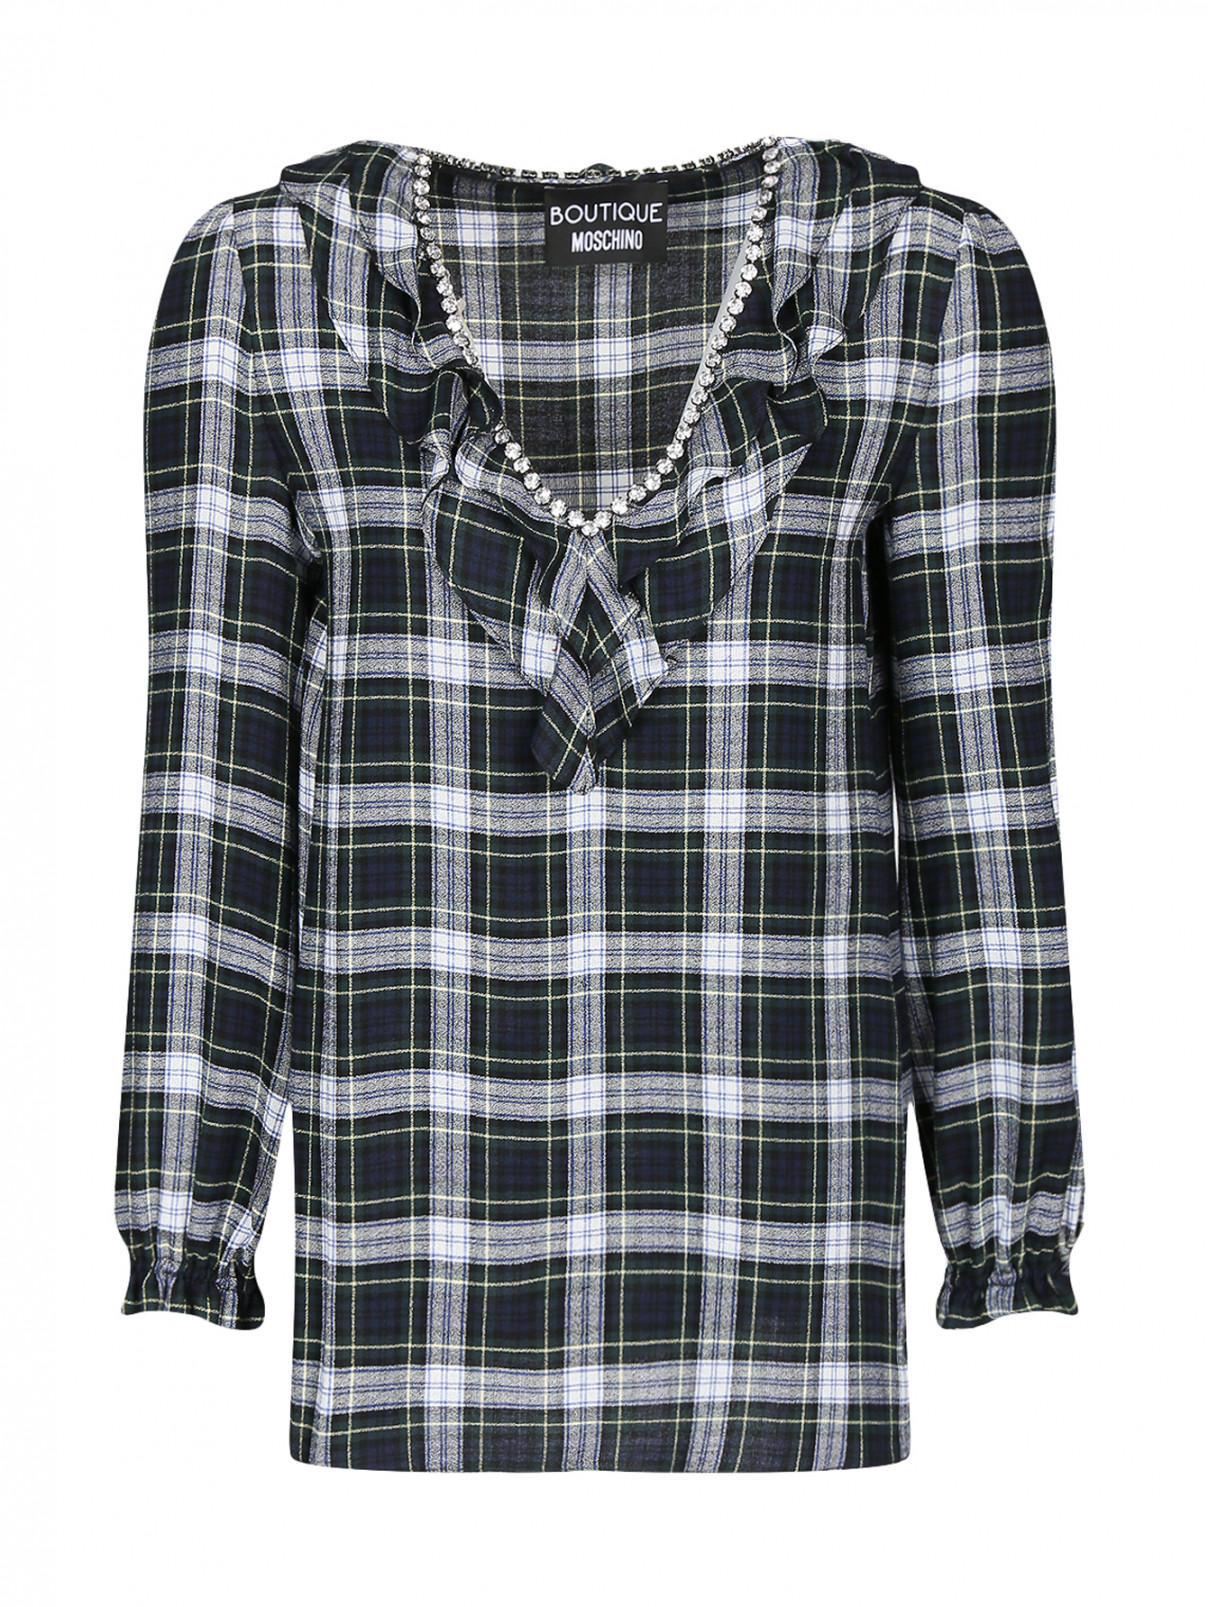 Блуза с узором "клетка" декорированная кристаллами Moschino Boutique  –  Общий вид  – Цвет:  Узор